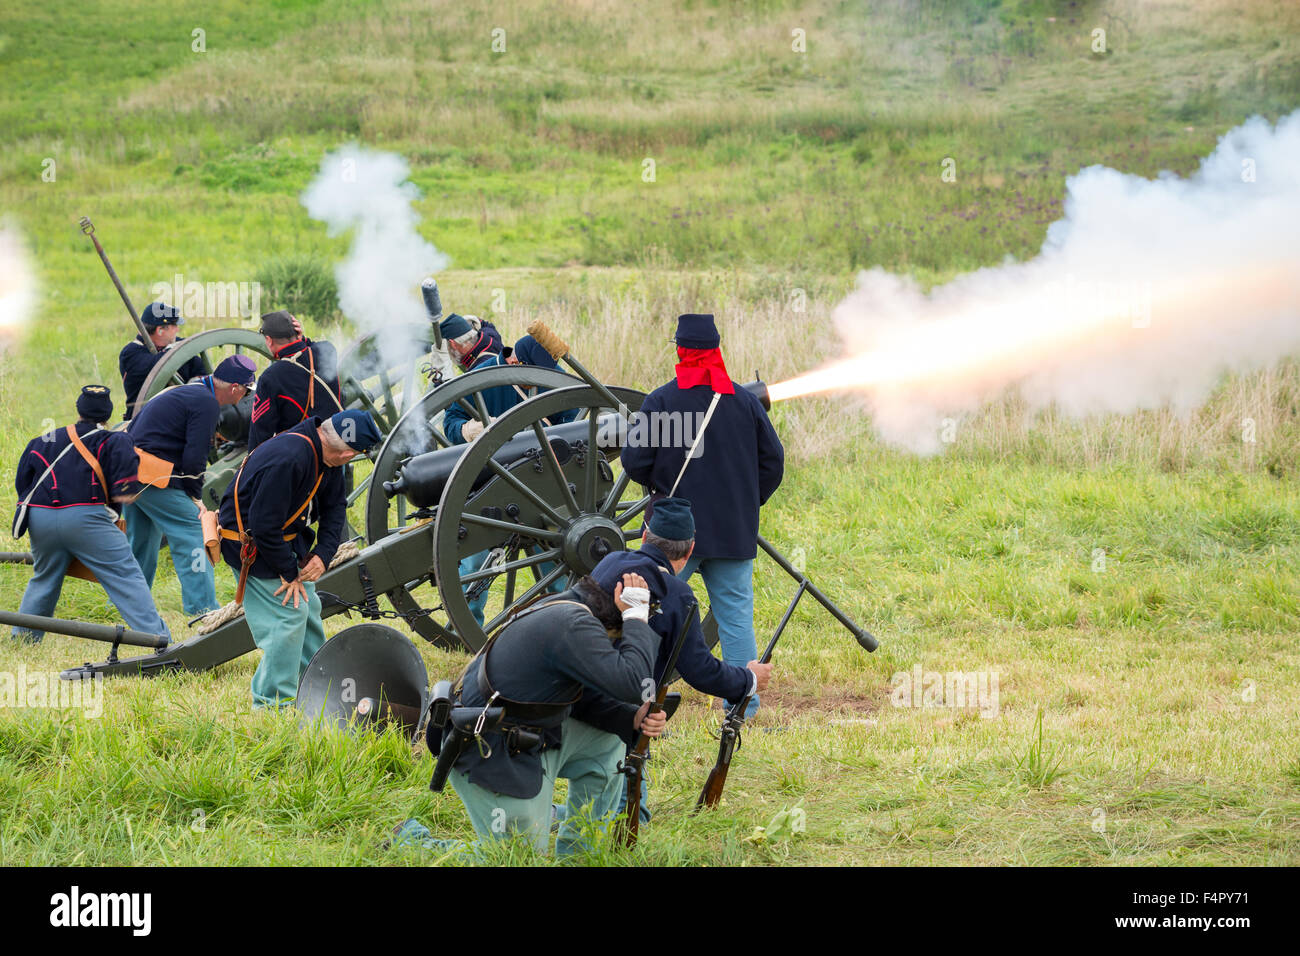 Des soldats de l'union non identifiables, tirer un coup de canon au cours d'une reconstitution de la guerre civile bataille de Gettysburg. Banque D'Images